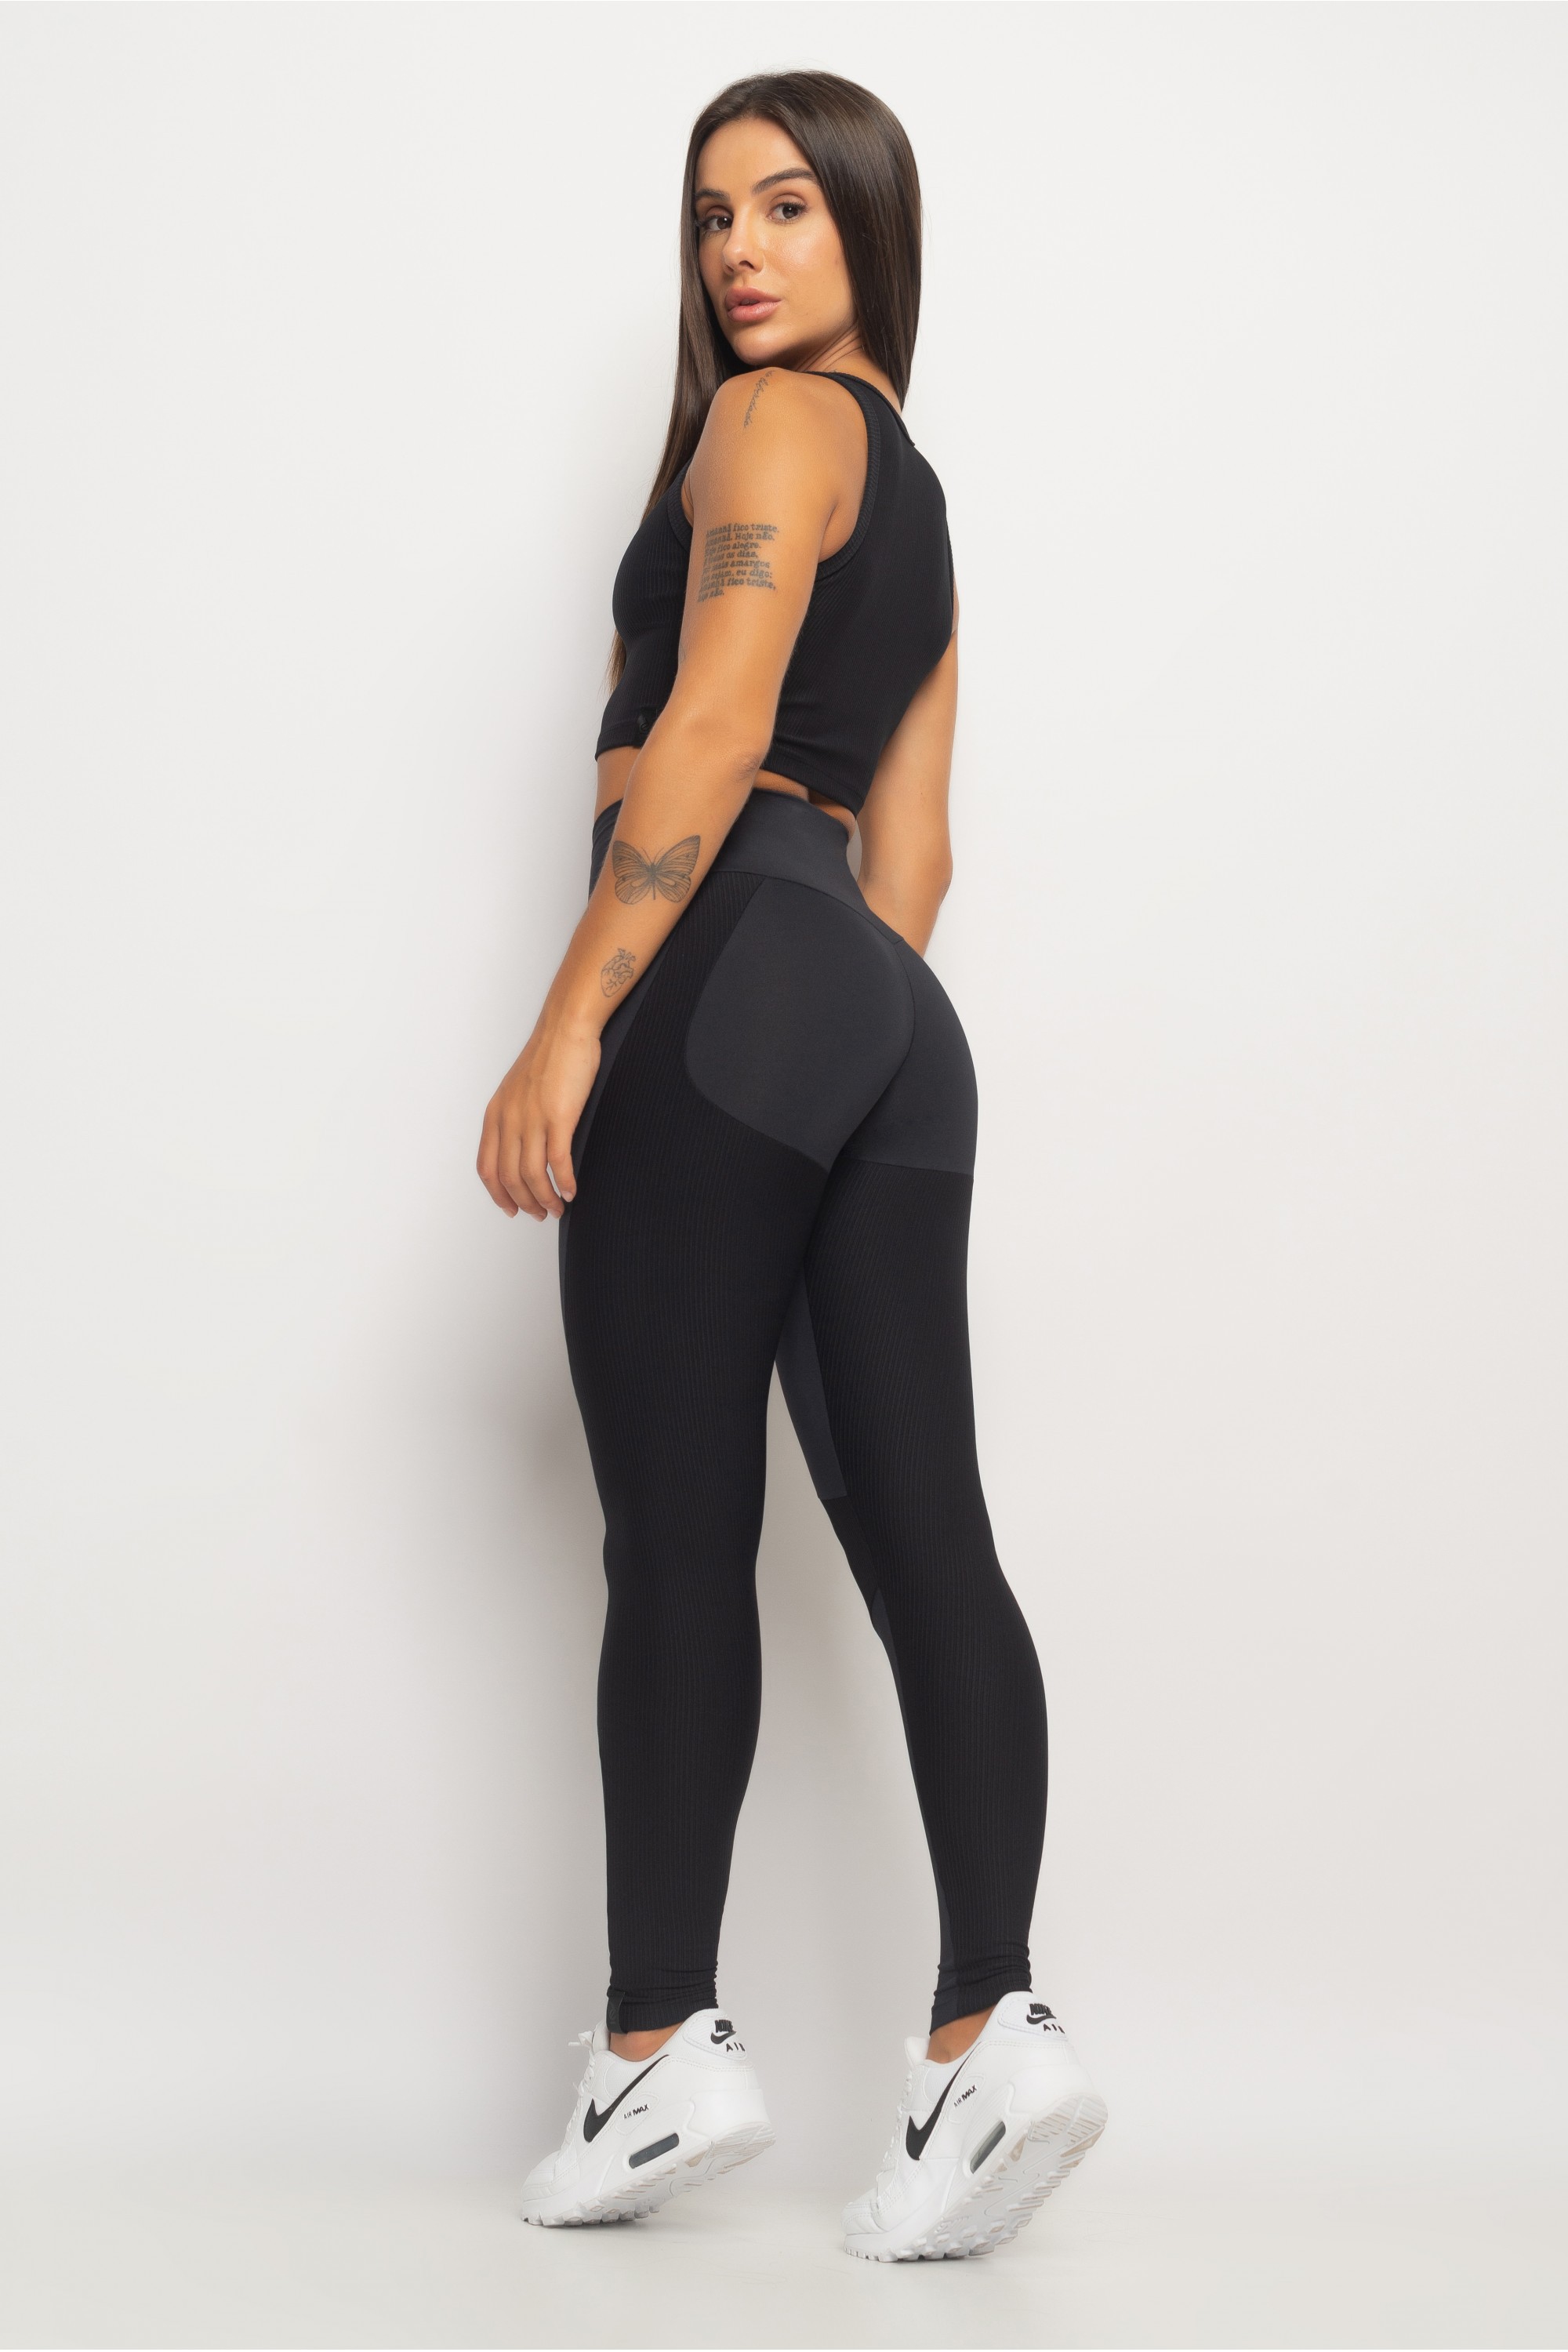 Calça Legging Fitness Be Legendary em Poliamida Preta com Recortes